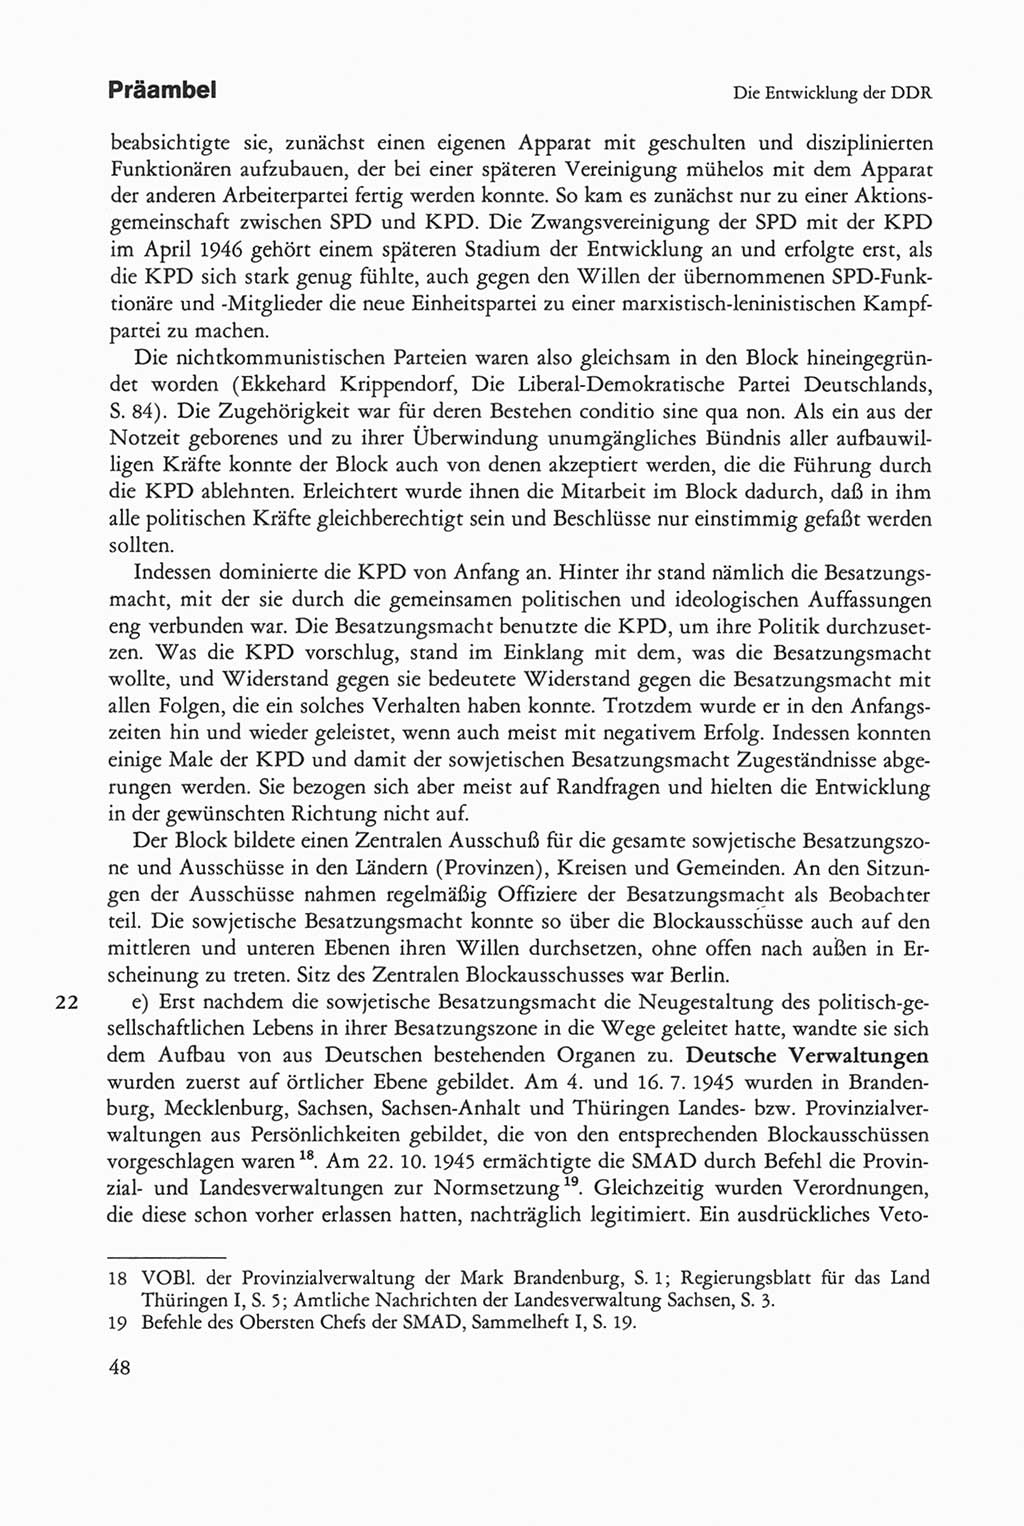 Die sozialistische Verfassung der Deutschen Demokratischen Republik (DDR), Kommentar 1982, Seite 48 (Soz. Verf. DDR Komm. 1982, S. 48)